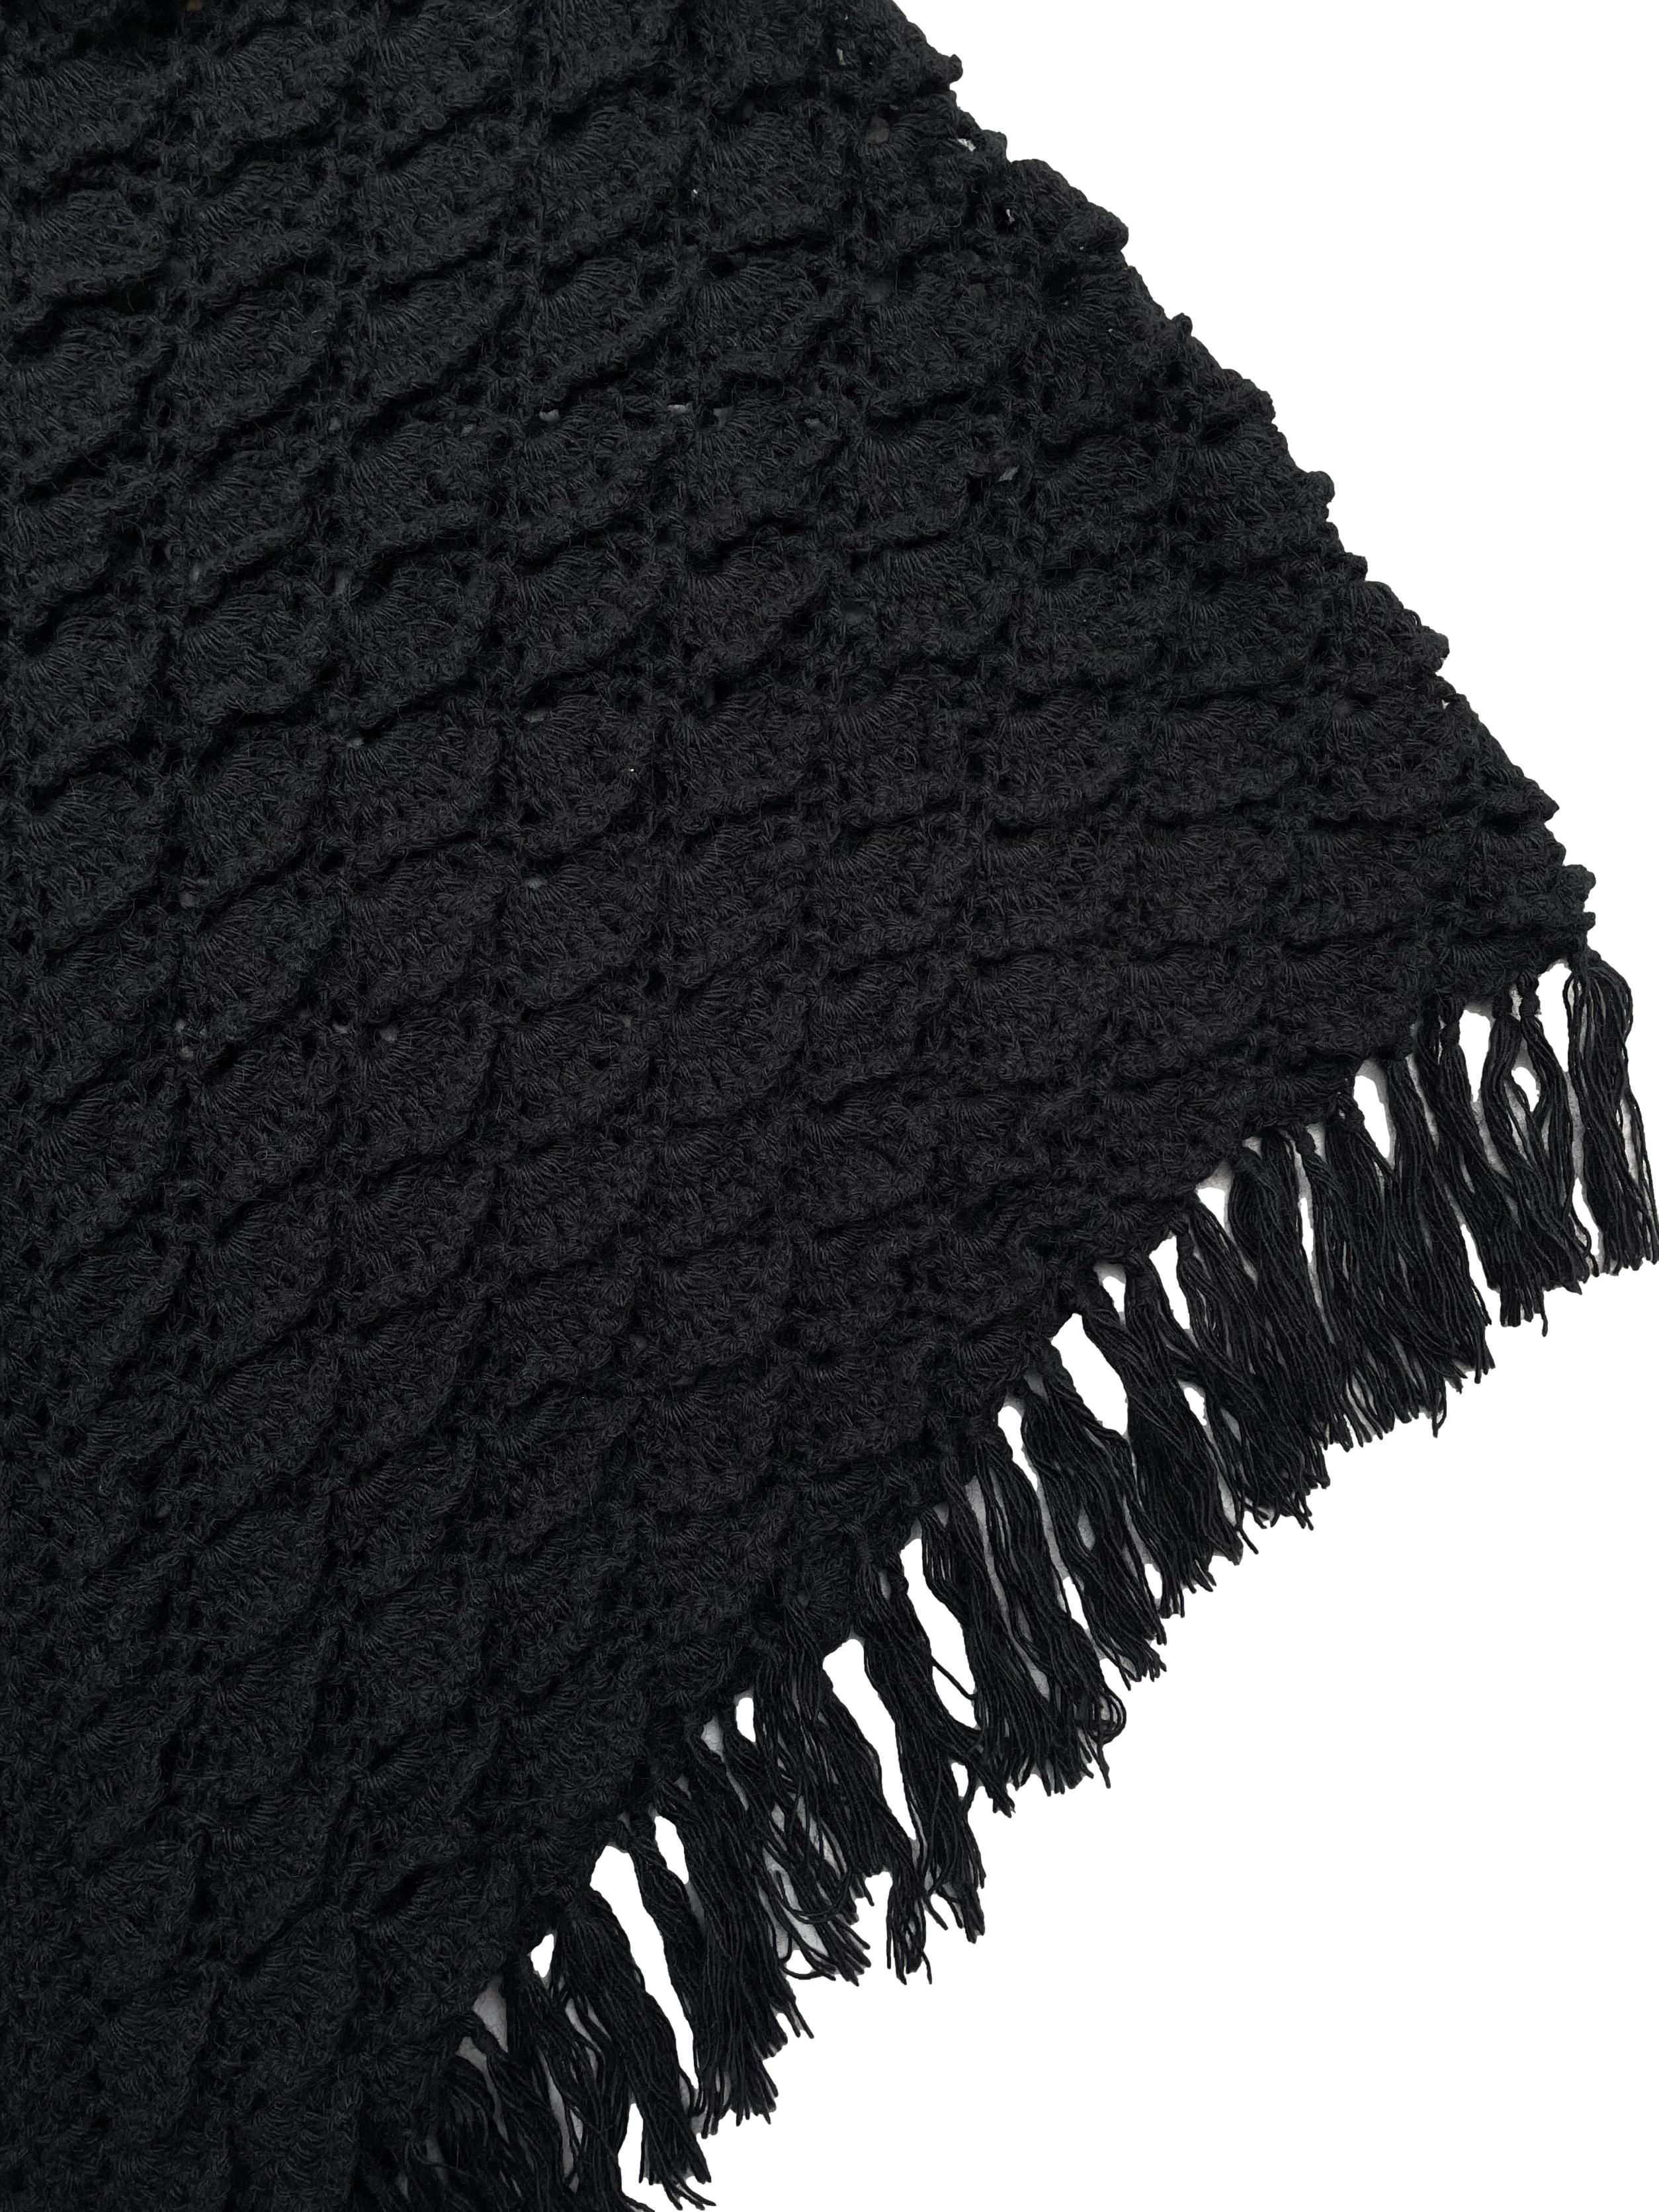 Poncho negro del Cite textil, tejido a mano en fibra de camélido, con cuello camisero y borlas. Hombros 45cm,Largo 75cm.